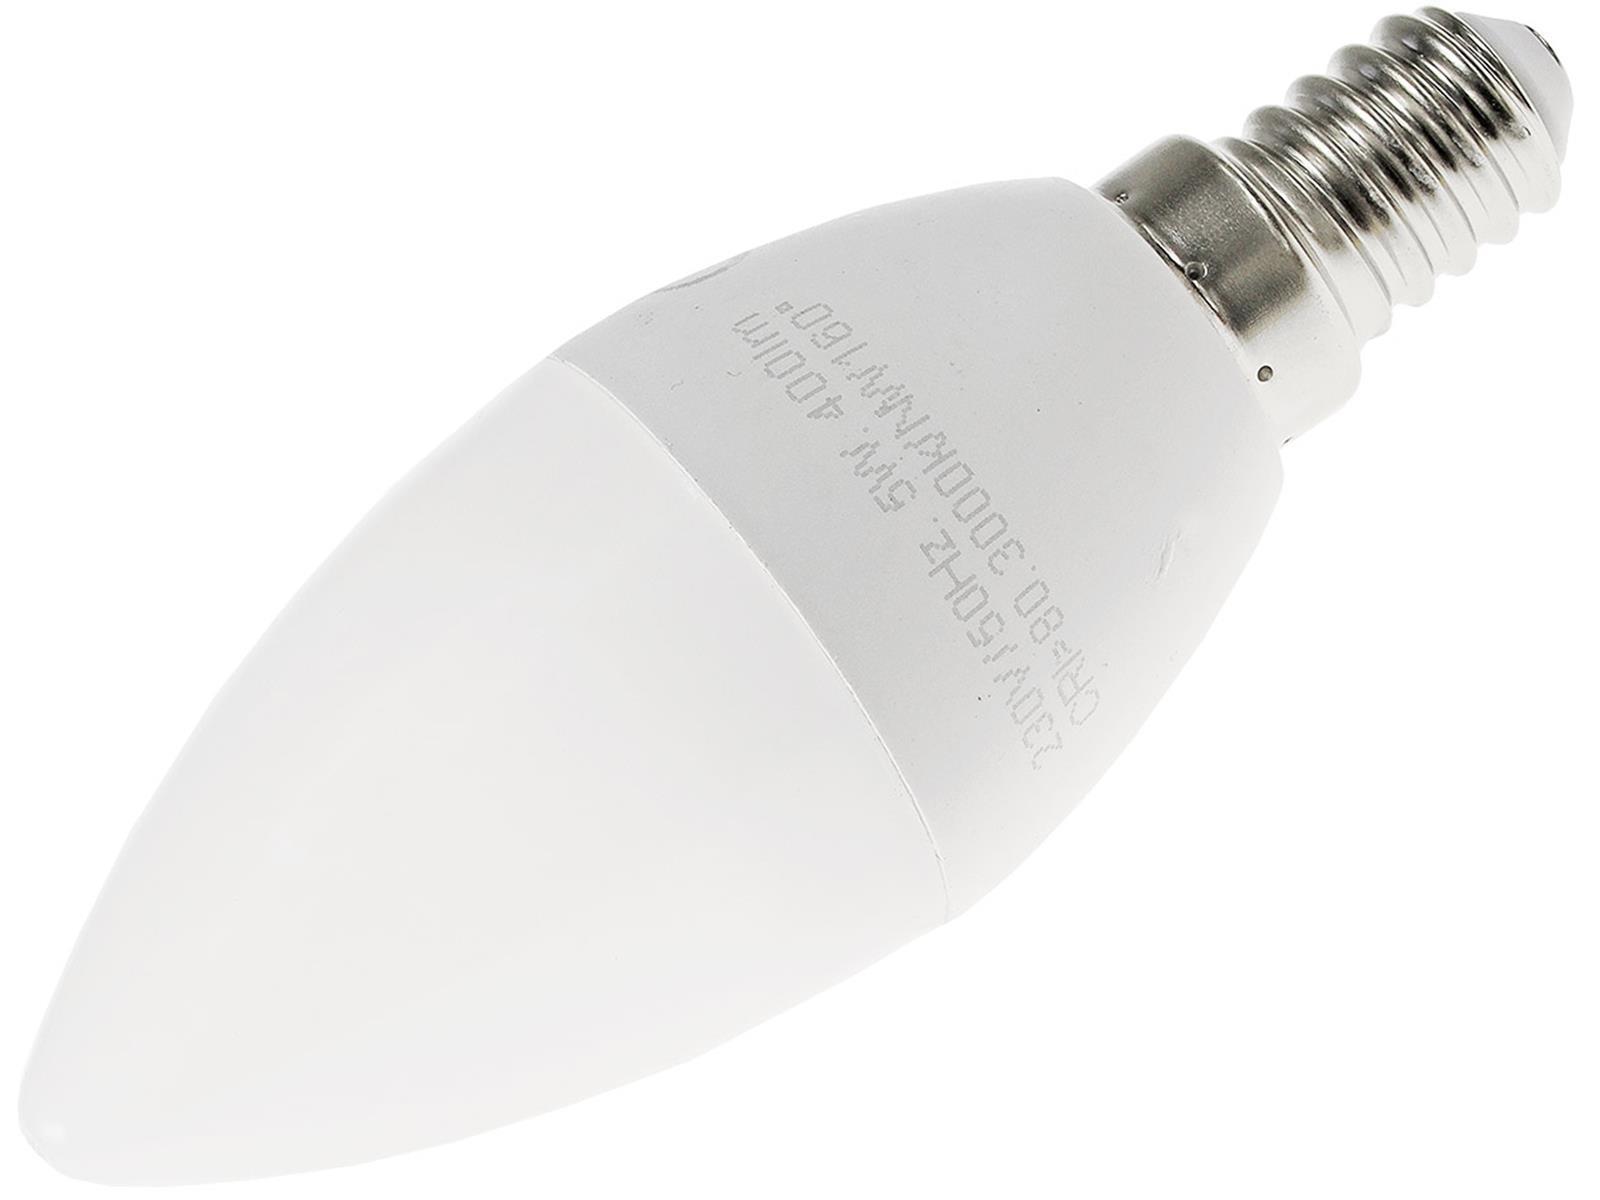 LED Kerzenlampe E14 "K70" warmweiß3000k, 656lm, 230V/7W